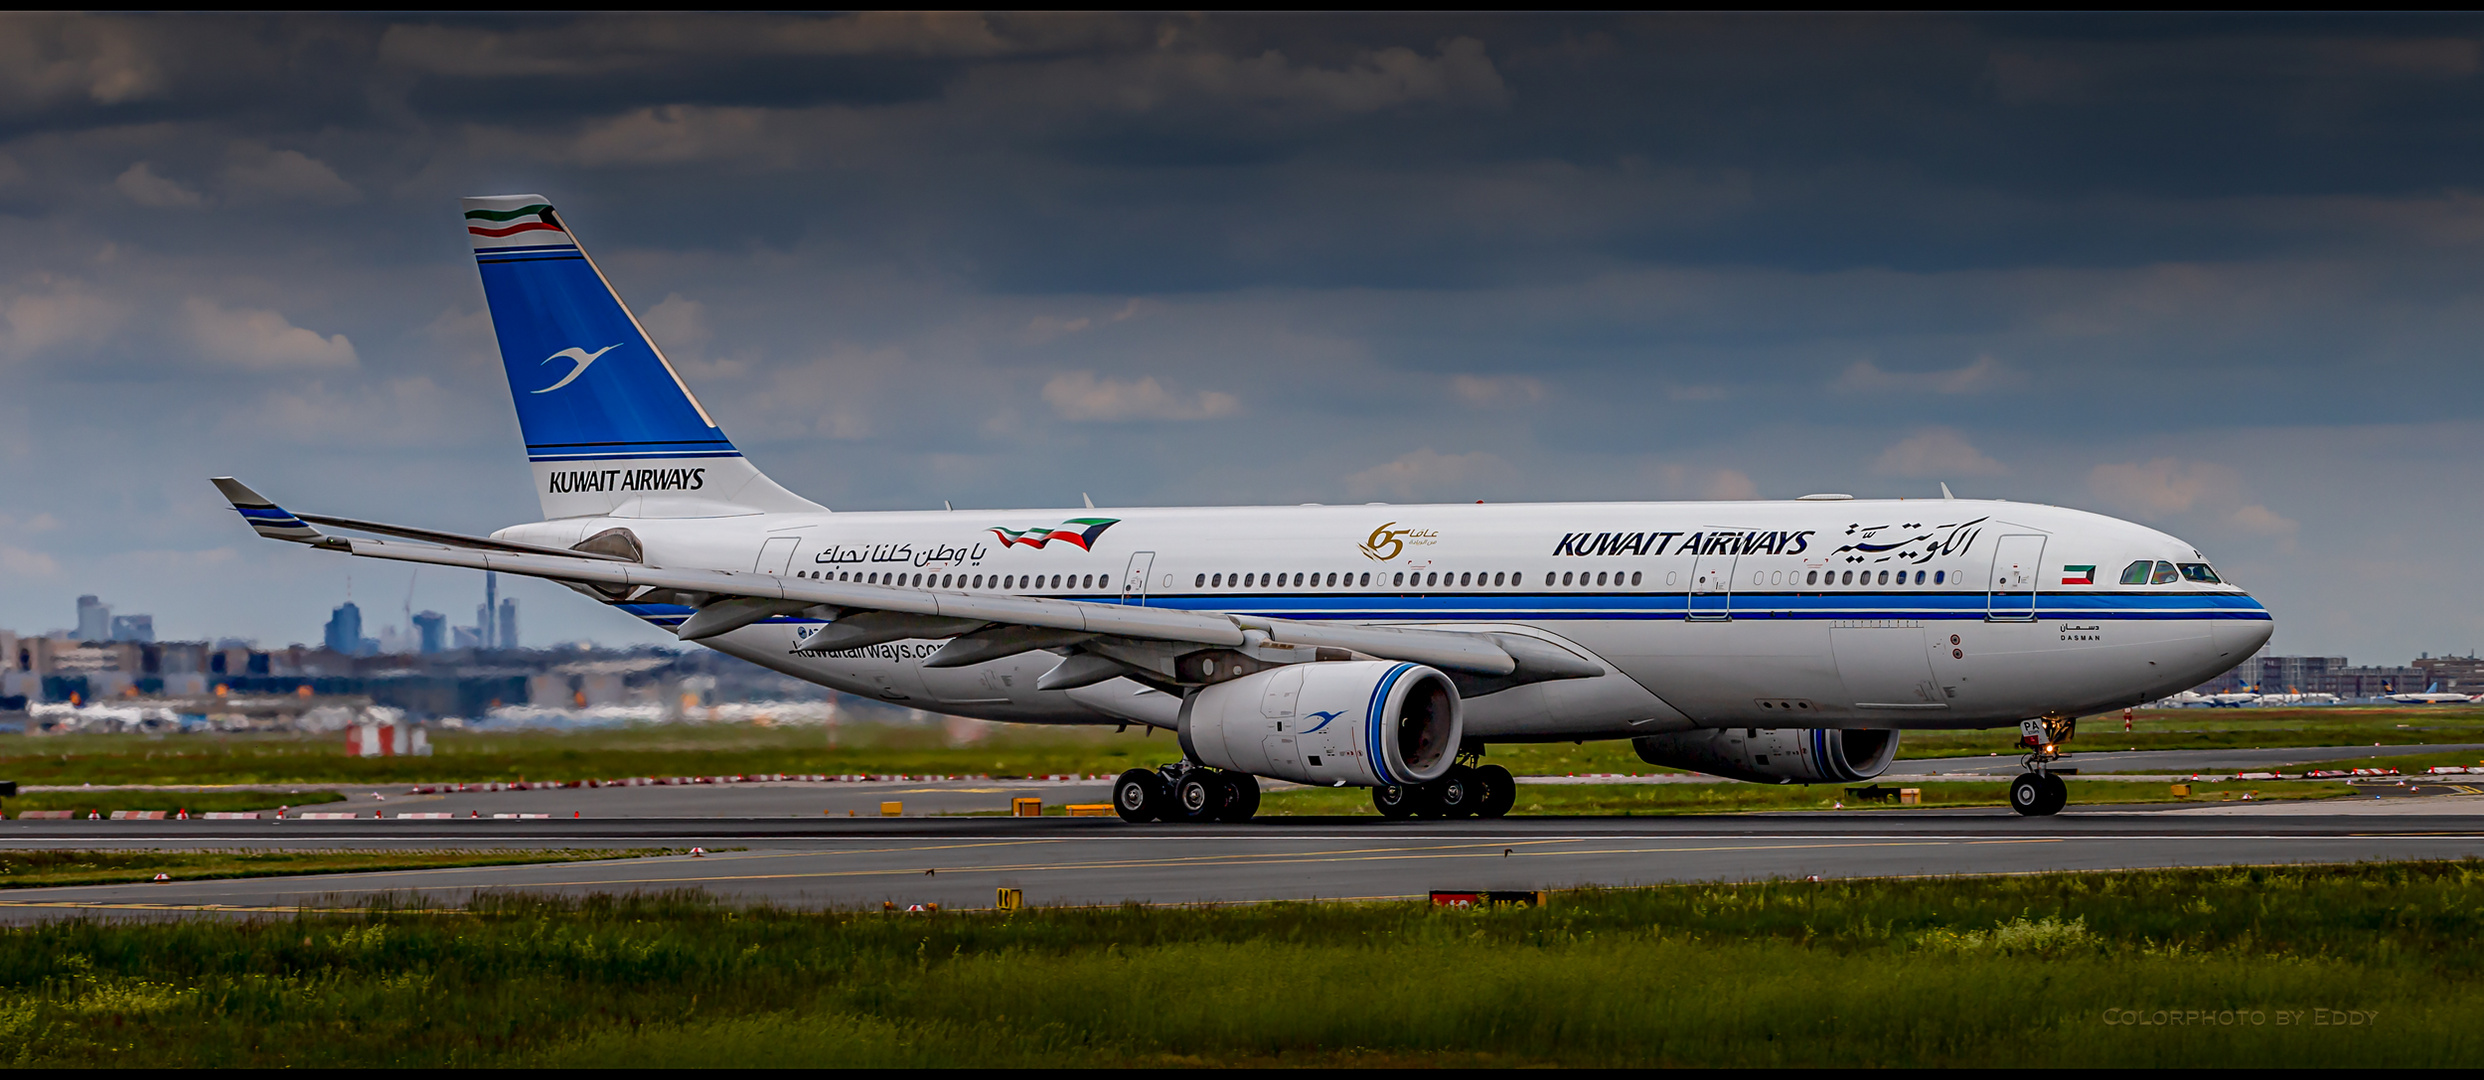 Airbus A330-200 der Kuwait Airways in Retrolackierung